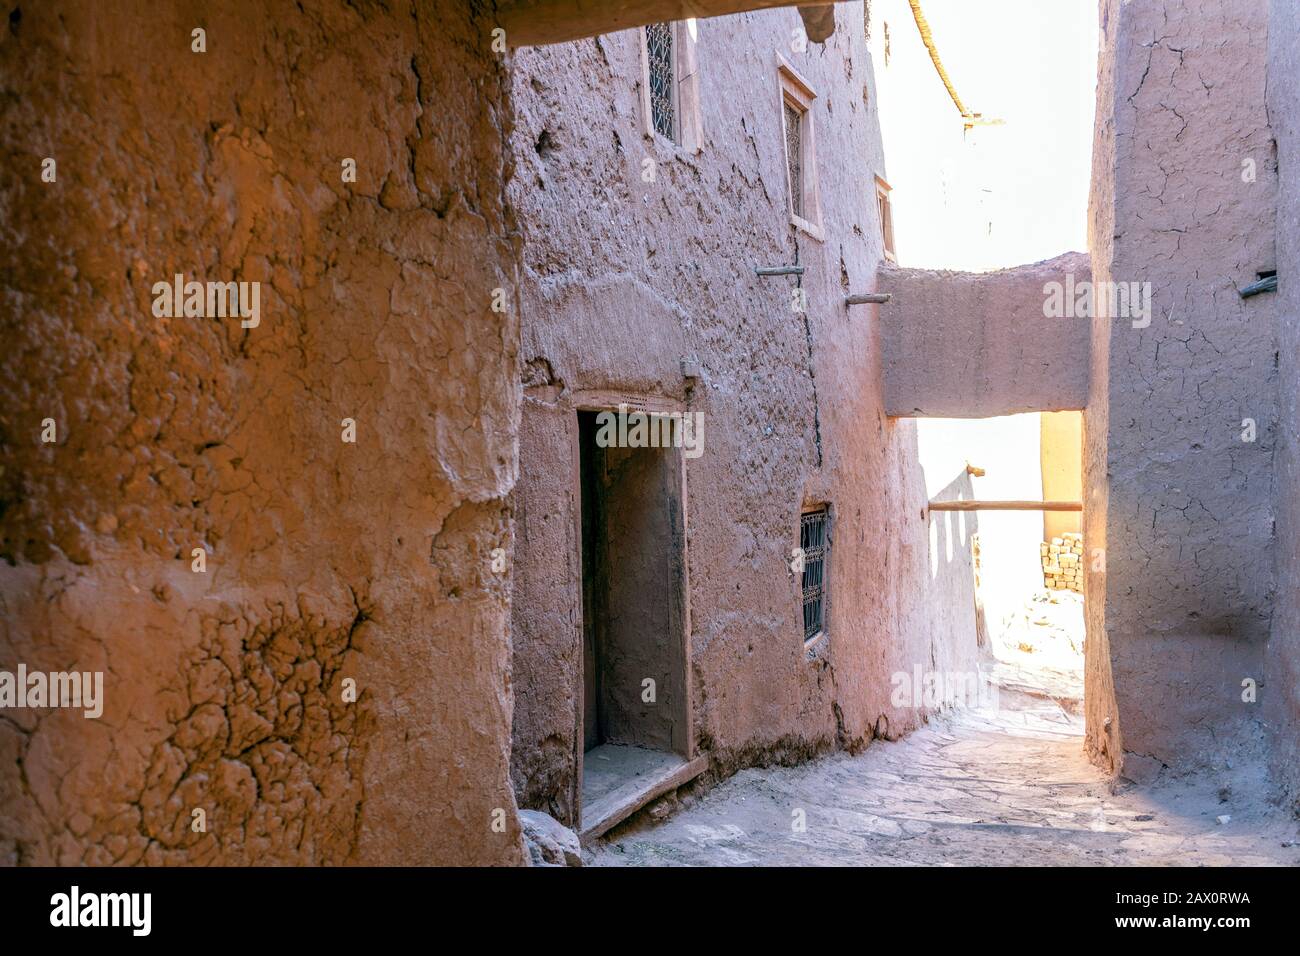 Rue étroite dans la ville argileuse ait Ben Haddou, site classé au patrimoine de l'UNESCO au Maroc Banque D'Images